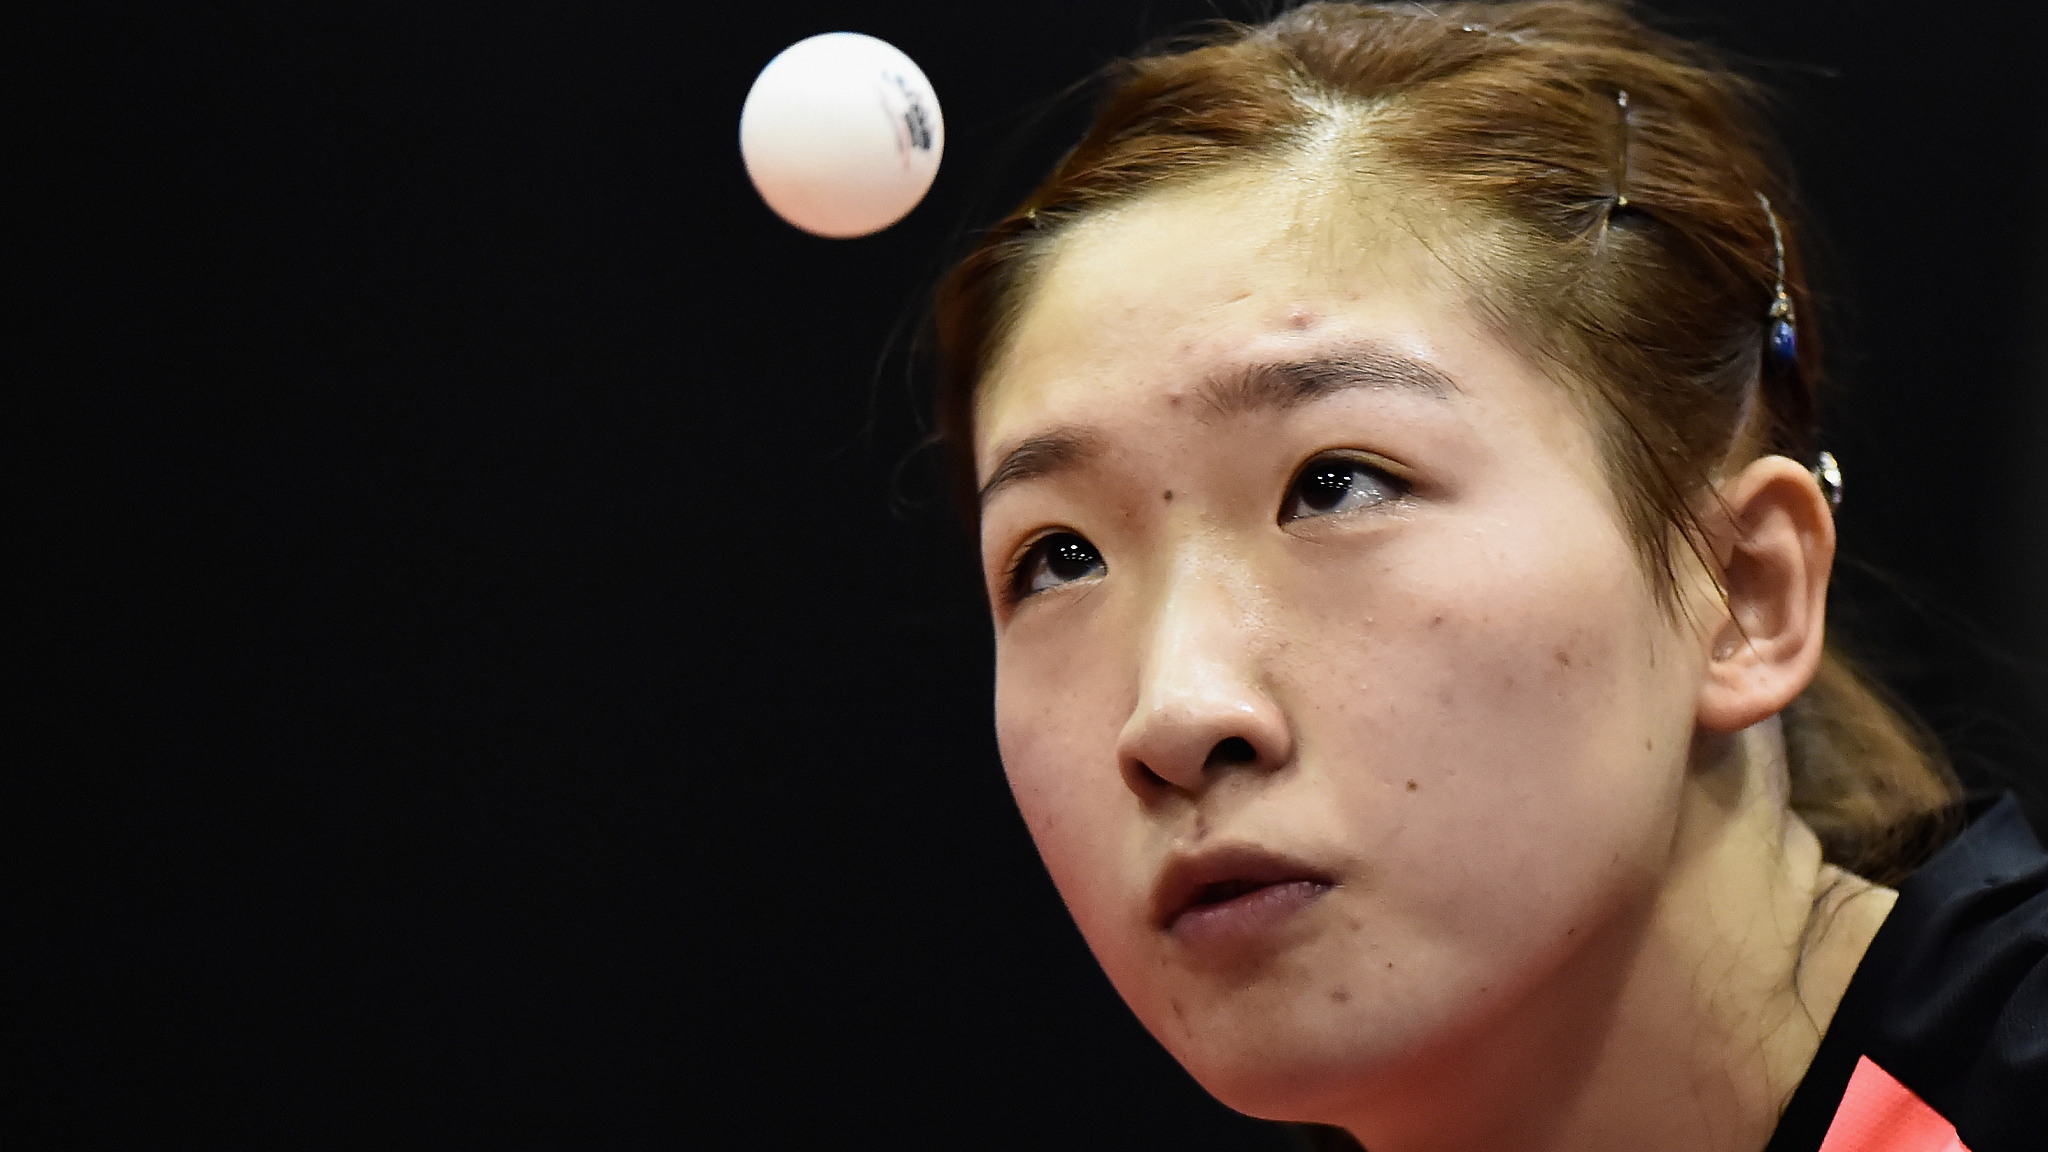 Liu Shiwen, Xu Xin win gold in 2018 ITTF Australia Open - CGTN.